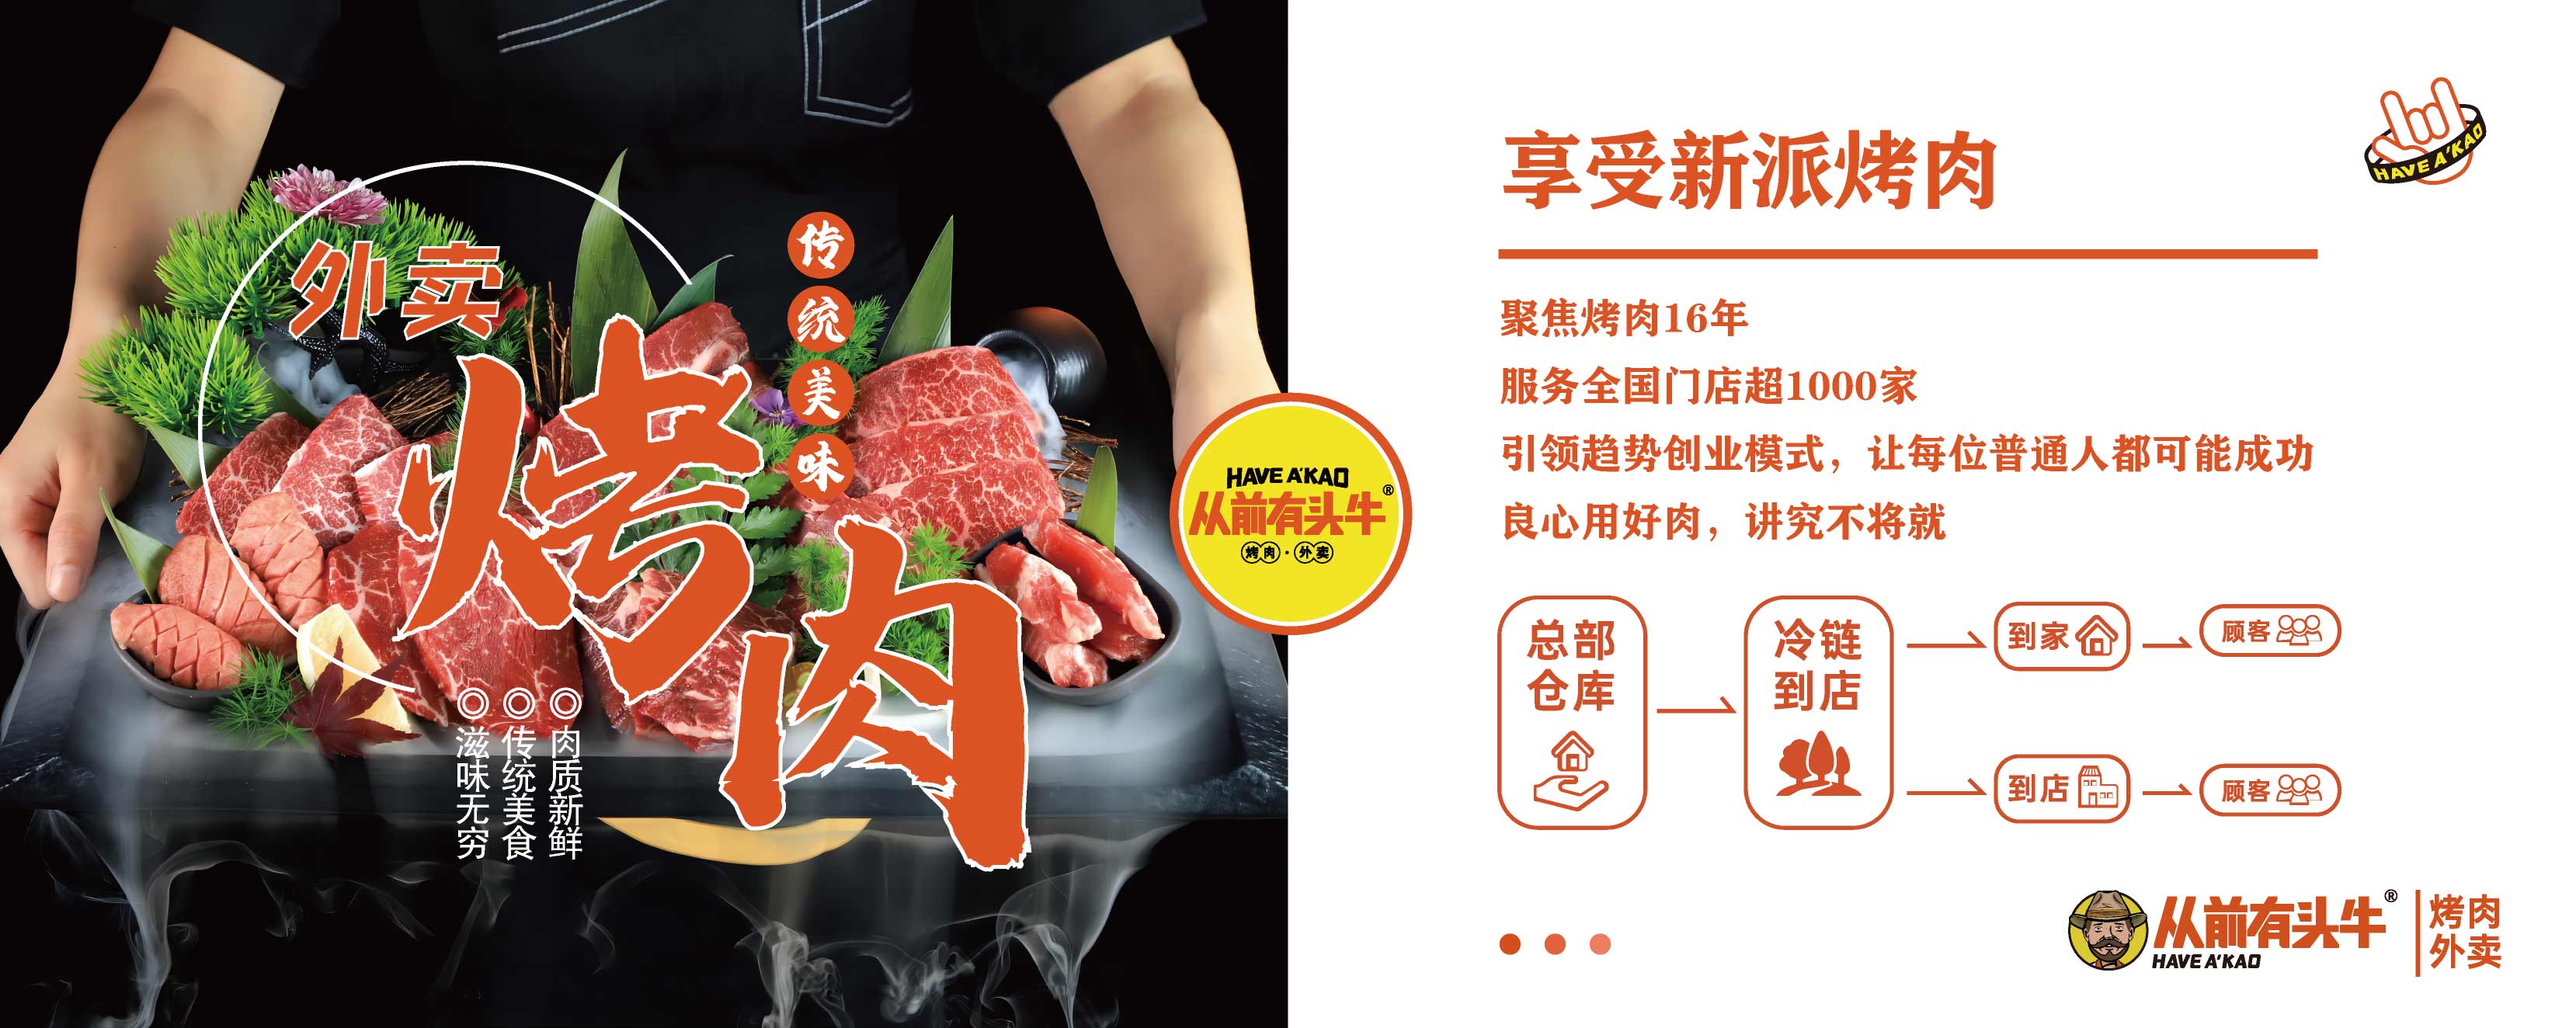 尚京餐饮集团,从前有头牛,从前有头牛烤肉外卖加盟